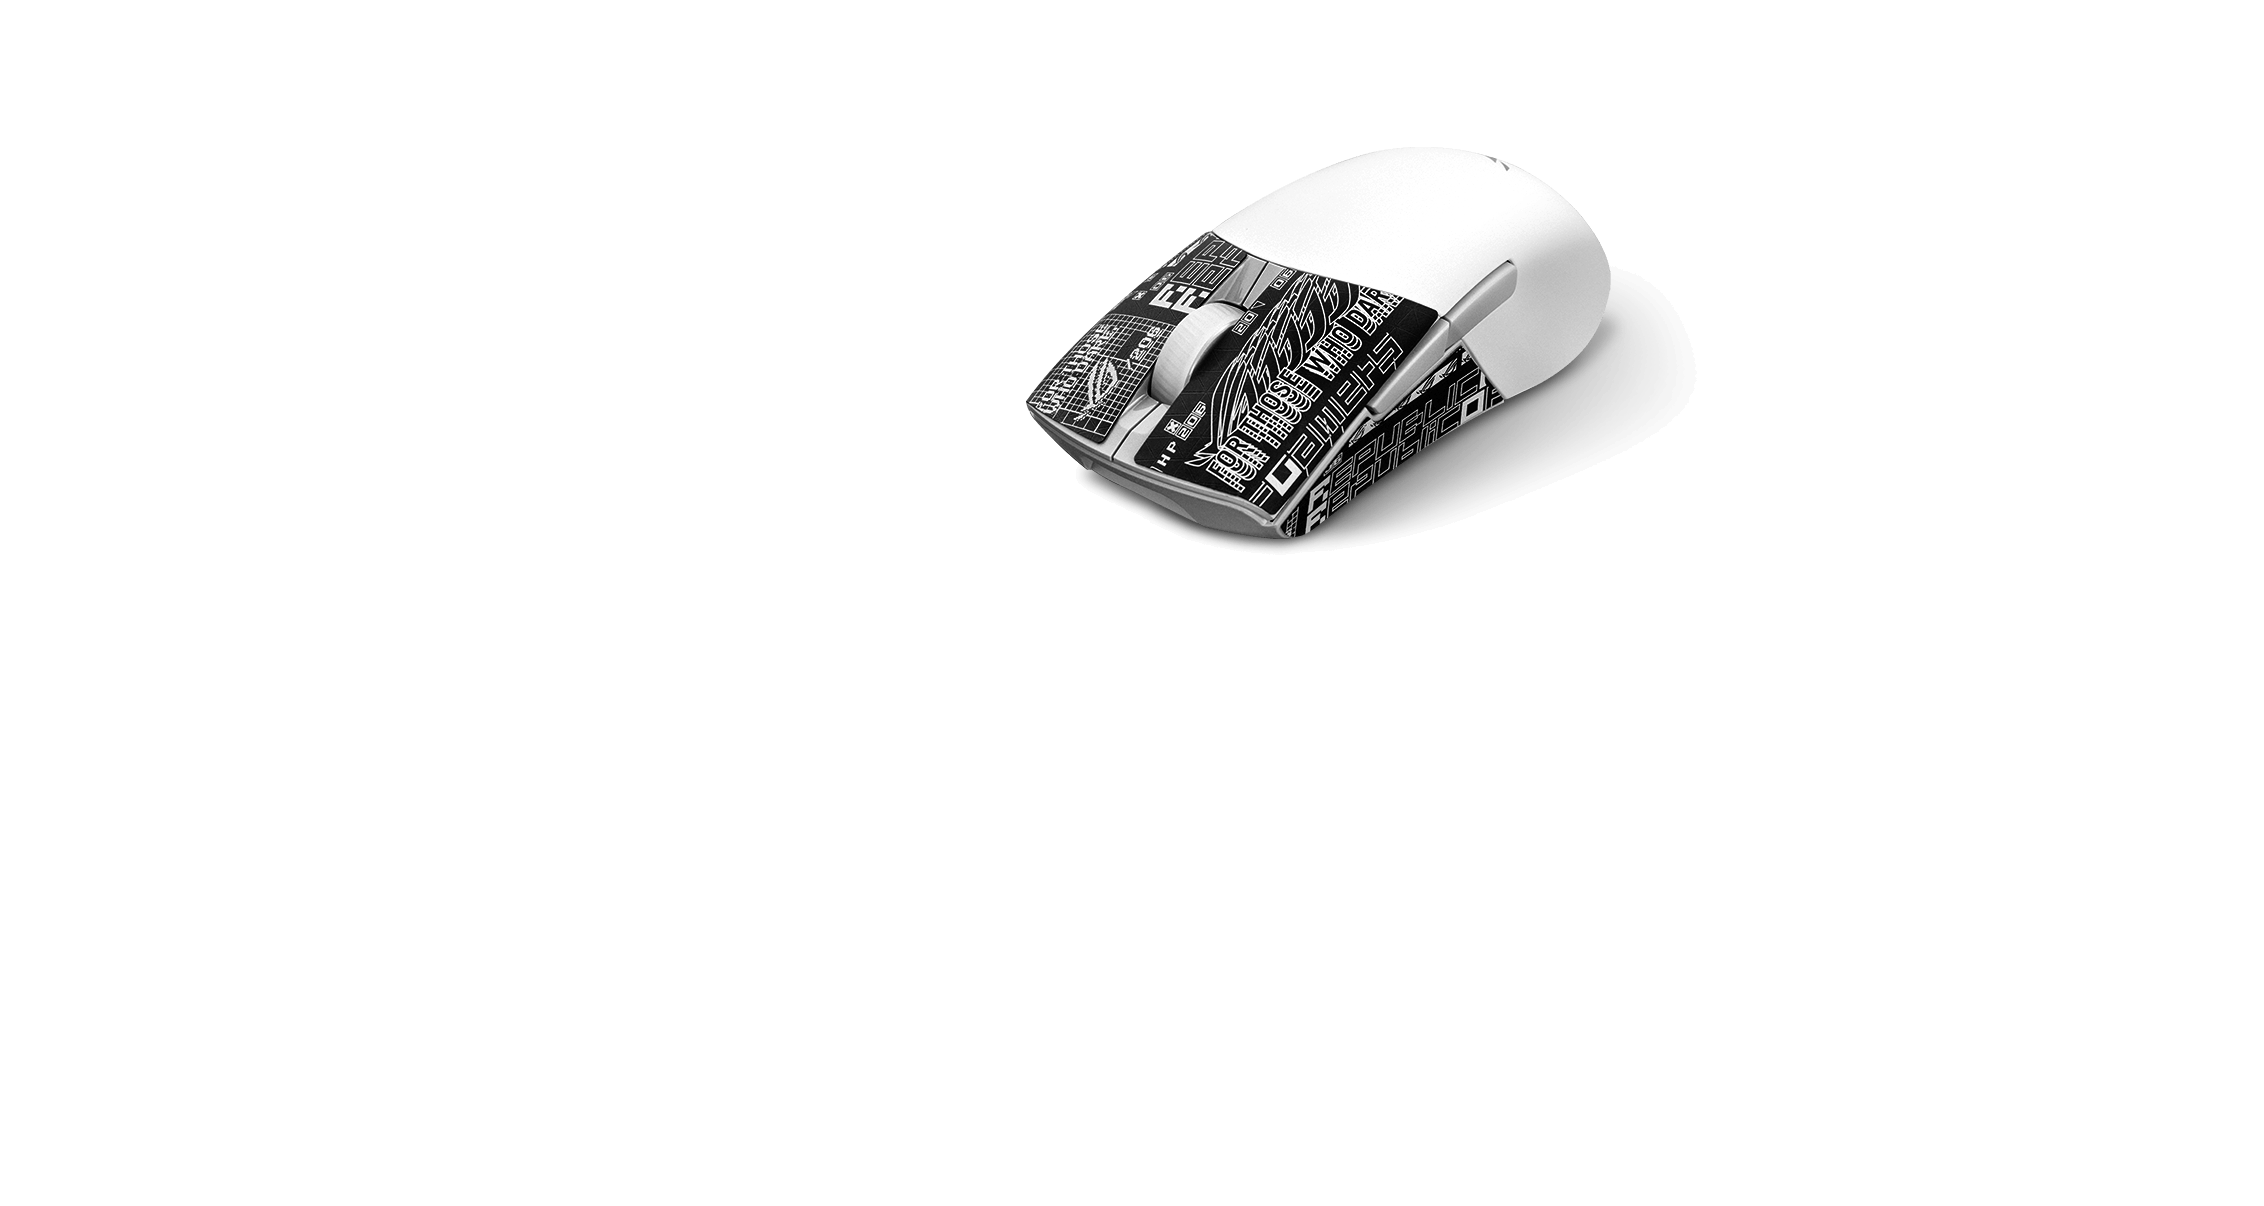 Eine weisser ROG Keris Wireless AimPoint mit ROG-gemustertem Grip Tape